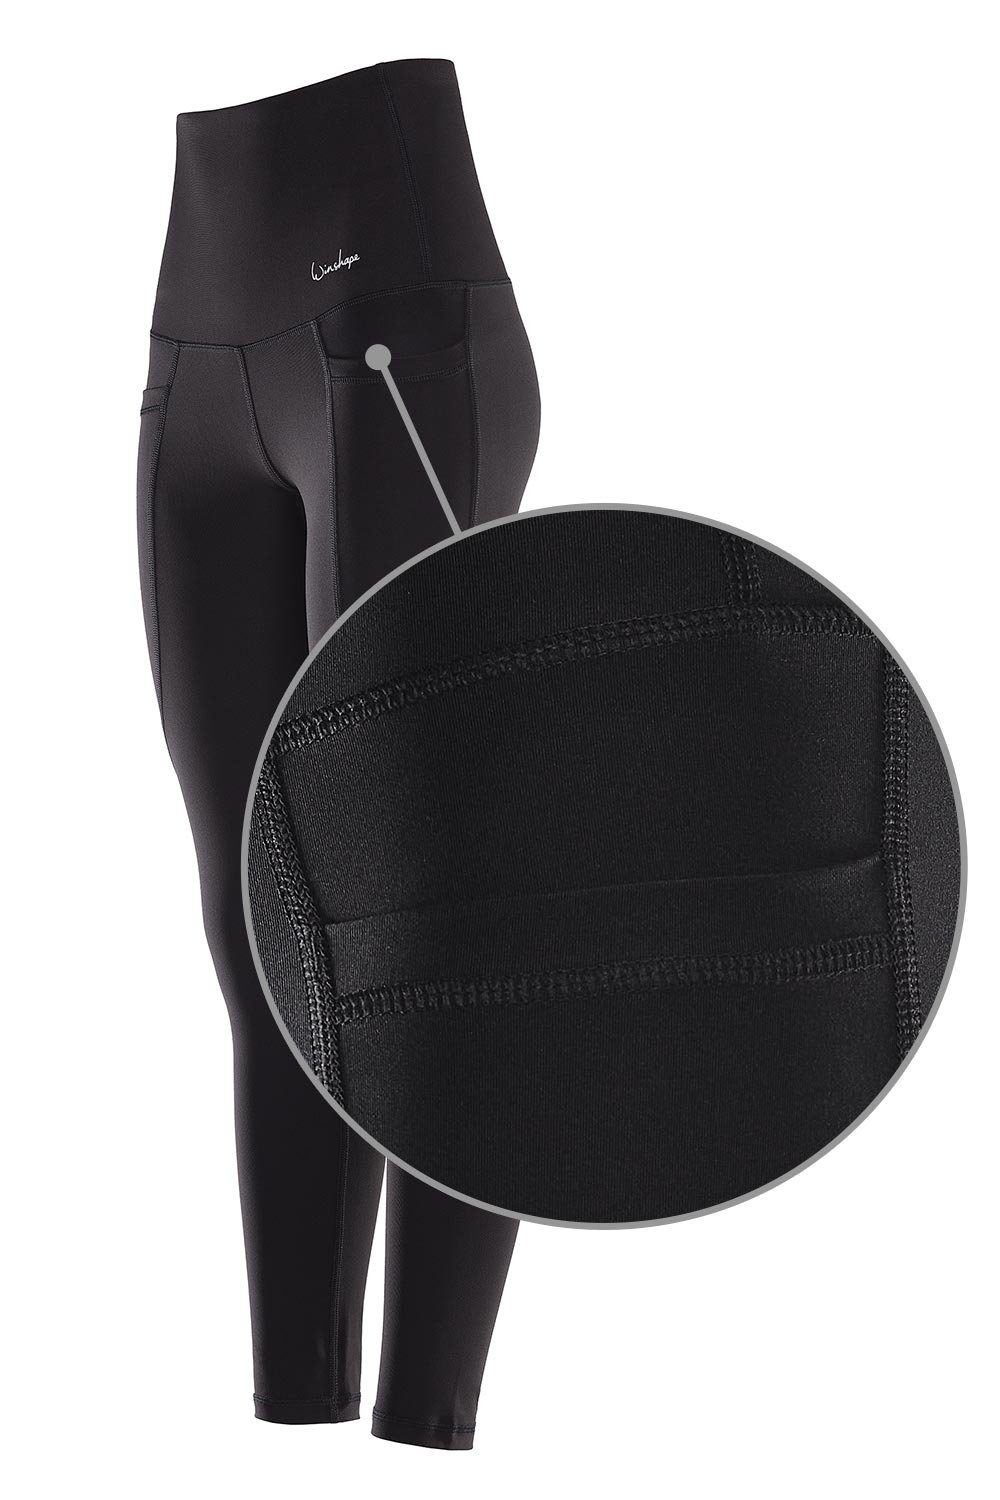 Winshape Leggings Functional Comfort Taschen High Waist HWL115C mit praktischen